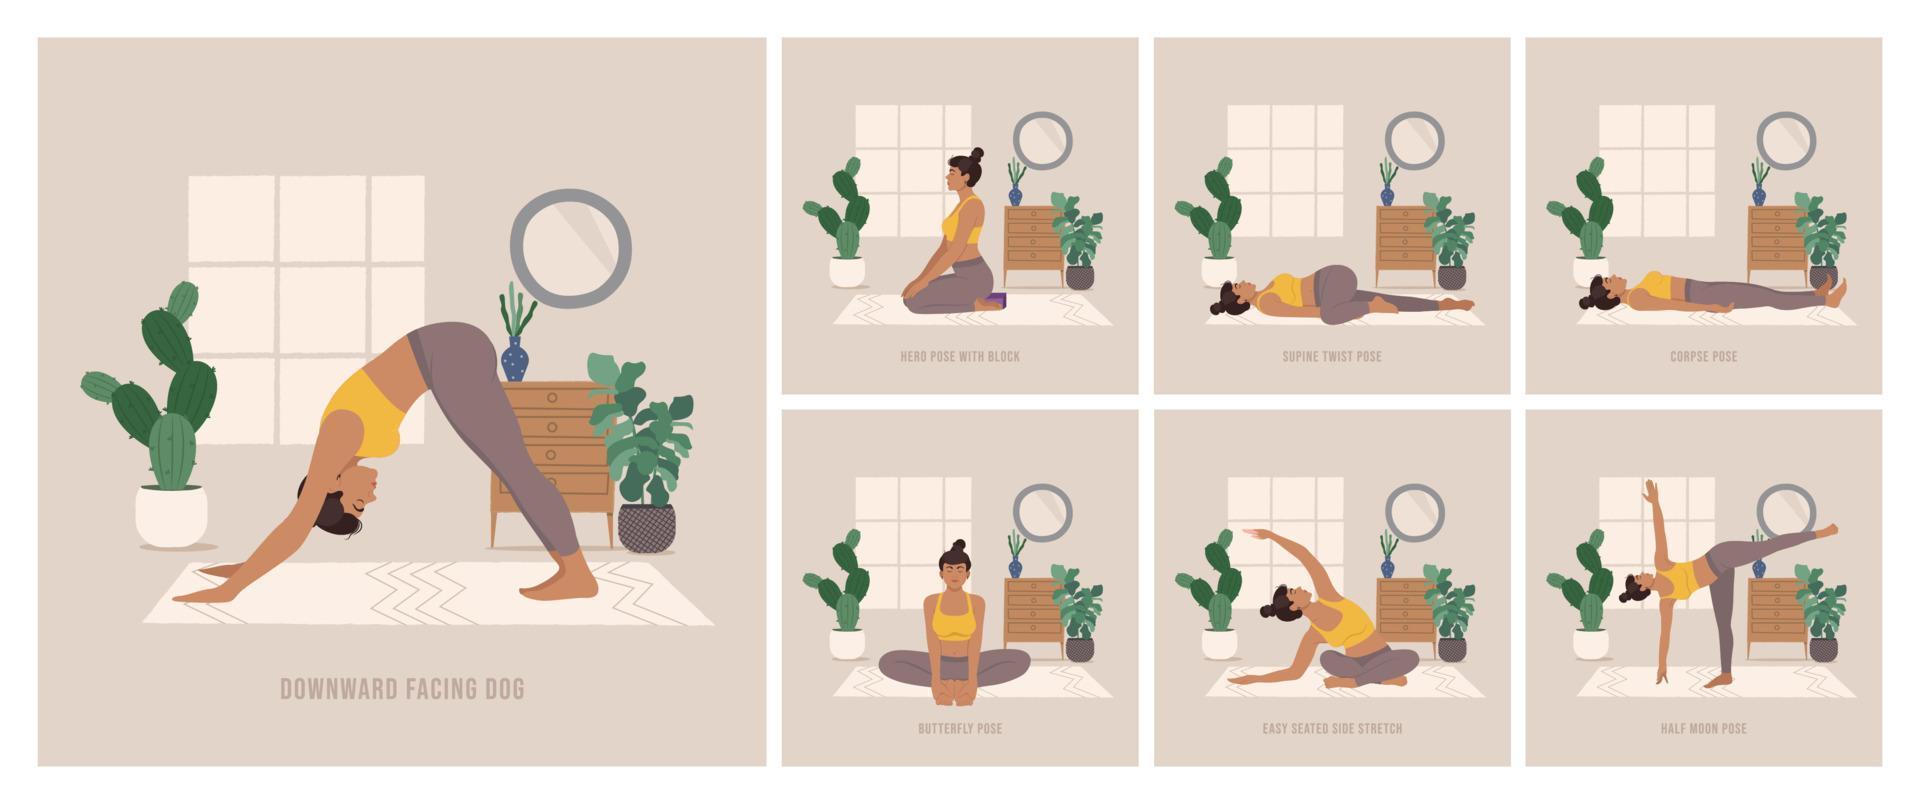 conjunto de posturas de yoga. mujer joven practicando pose de yoga. mujer entrenamiento fitness, aeróbicos y ejercicios. ilustración vectorial de estilo boho. vector